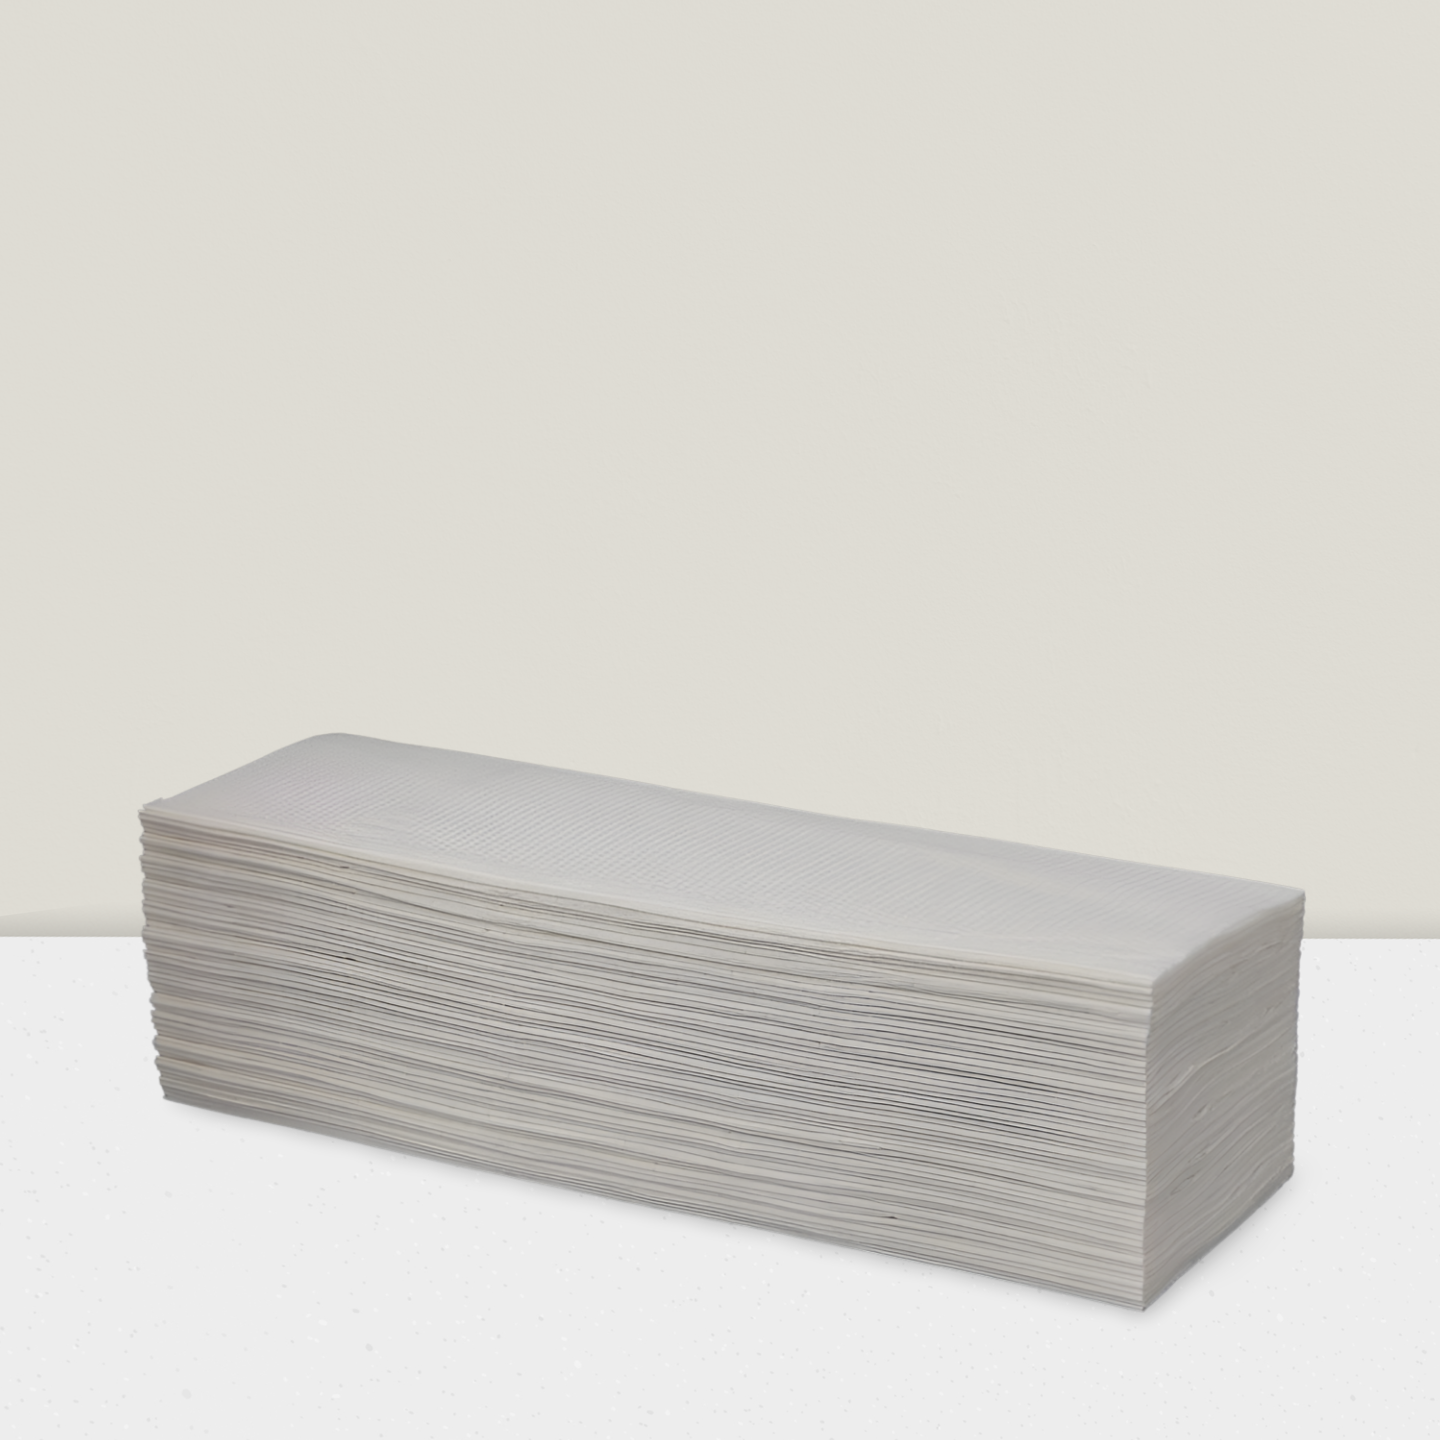 Papier- und Falthandtuch, N-Falz, 2-lagig, 21 x 24 x 8,0 cm (nur 8 cm Tiefe) Multifold-Handtücher